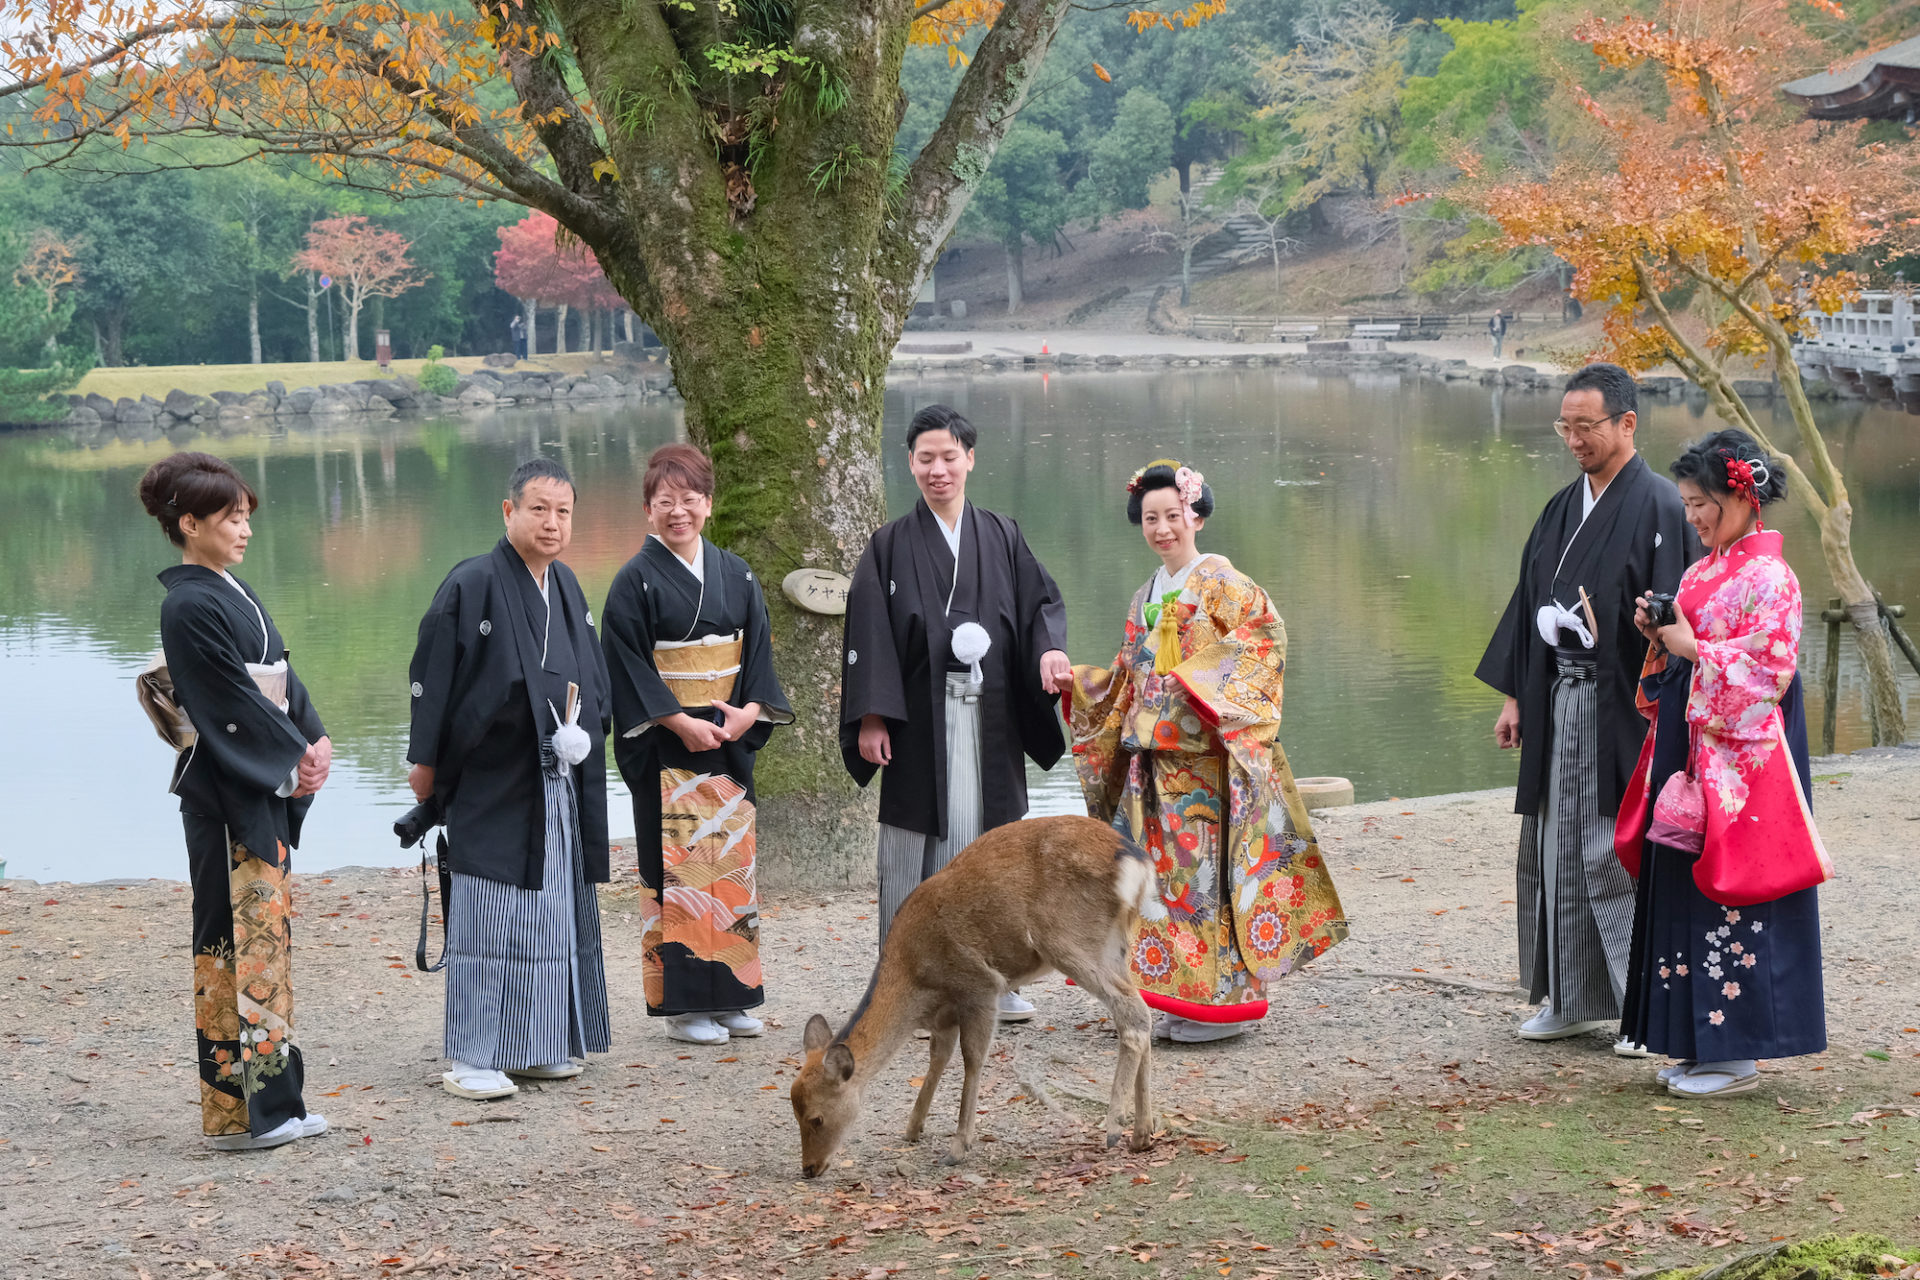 奈良で和装前撮りフォトウエディングの家族写真